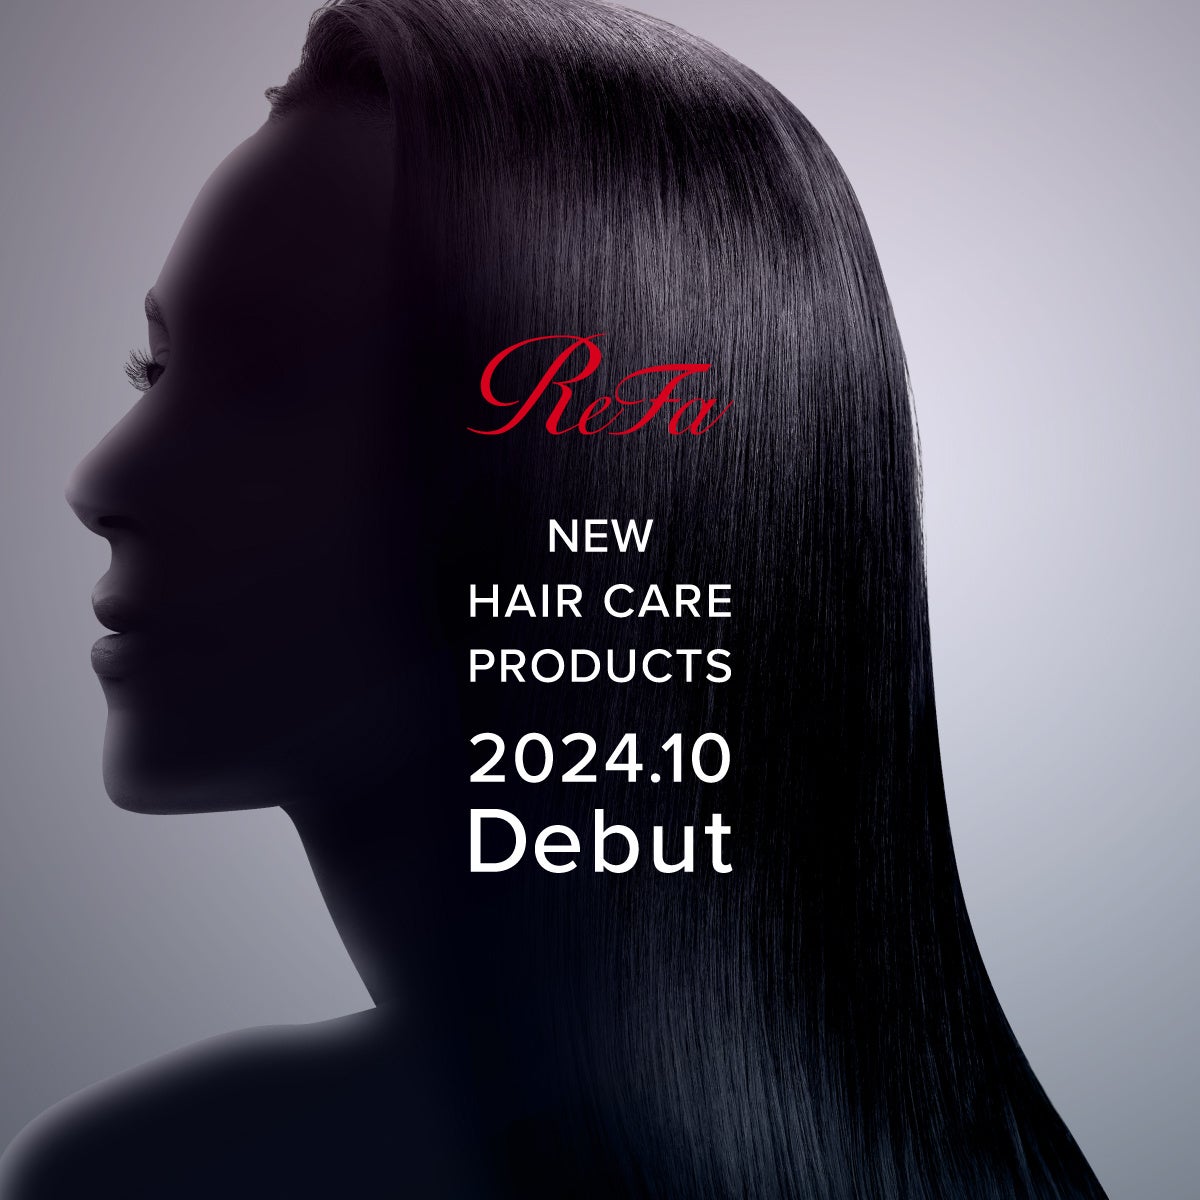 韓国・ソウル発のラグジュアリーメイクアップブランド「HERA（ヘラ）」が、2024年7月8日（月）から松屋銀座で長期ポップアップストアを展開